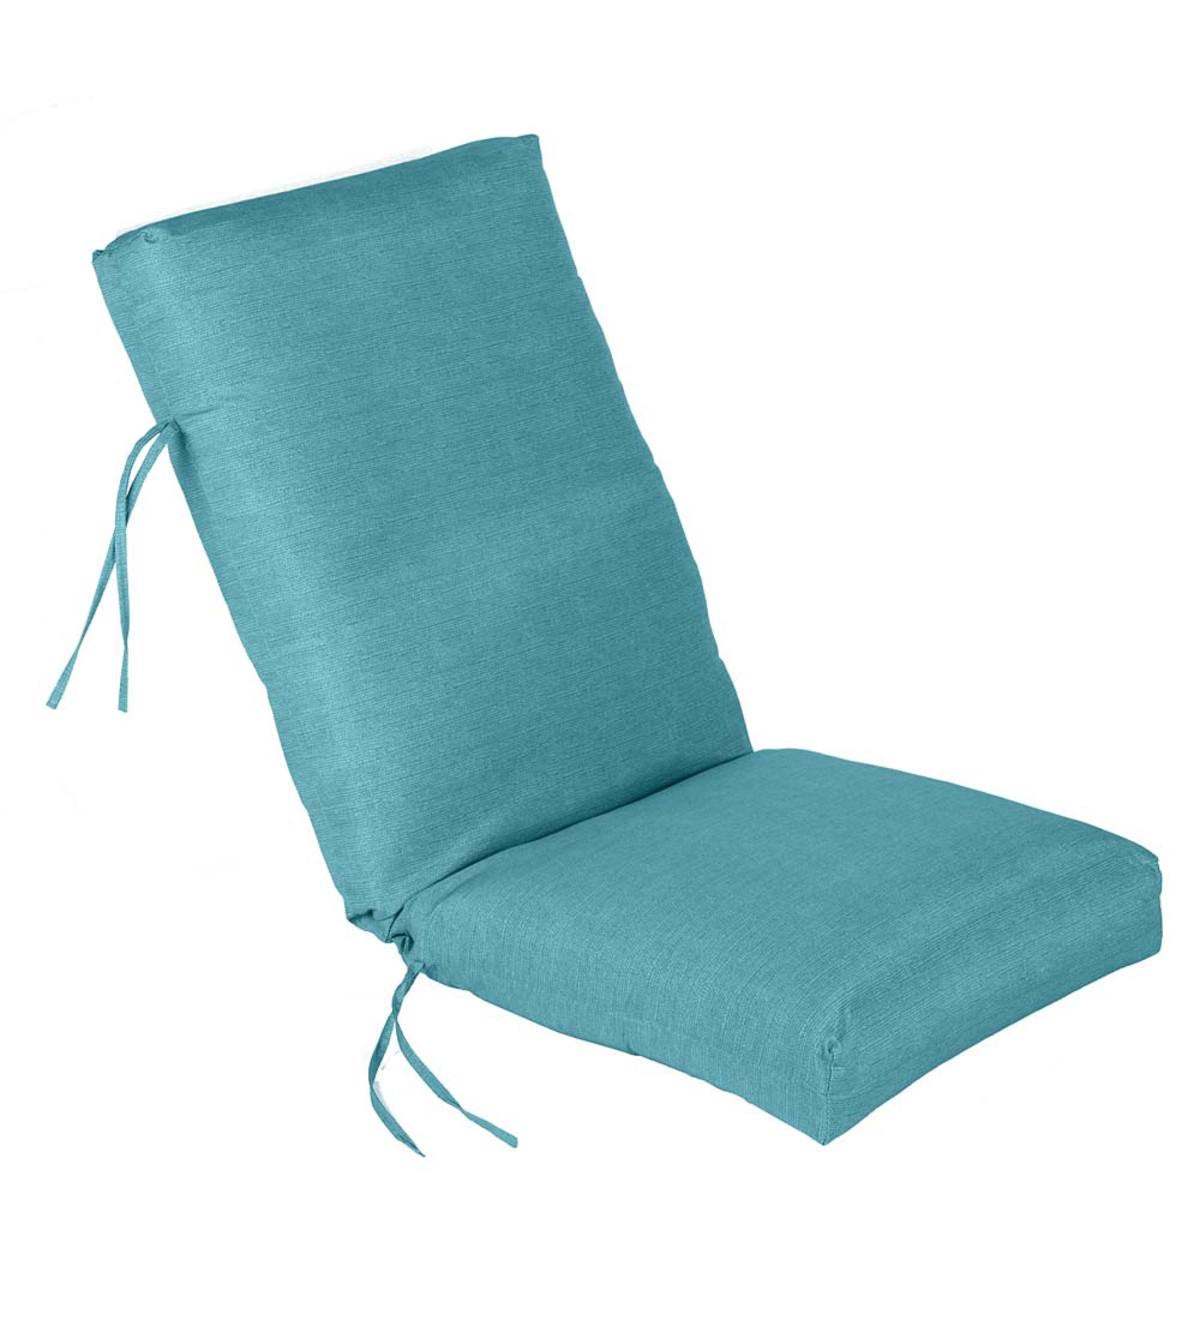 Shenandoah Outdoor High Back Chair Cushion